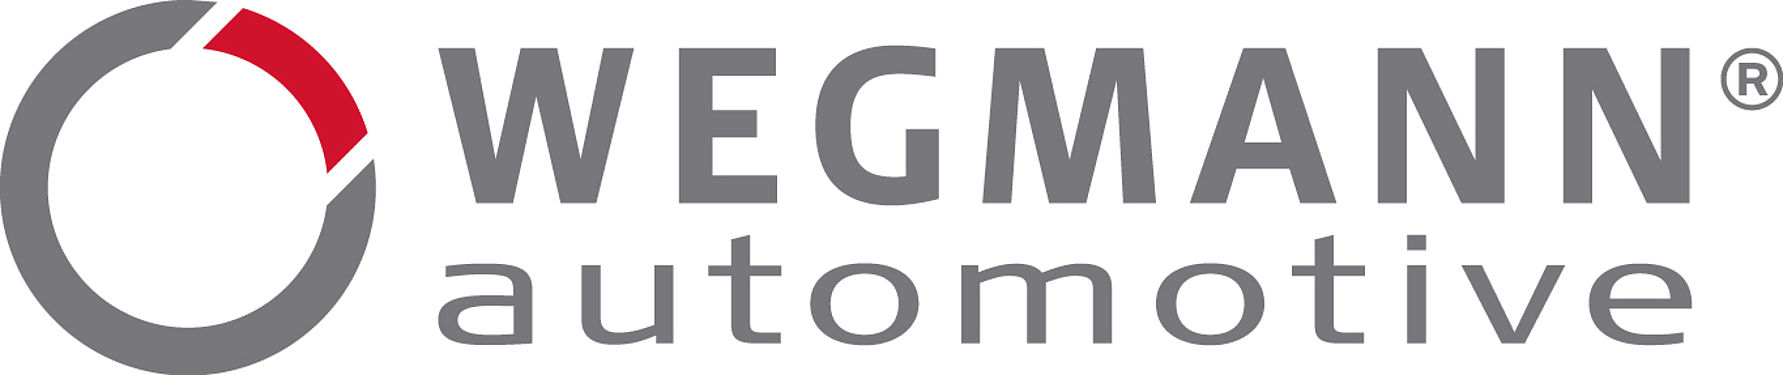 Wegmann-logo